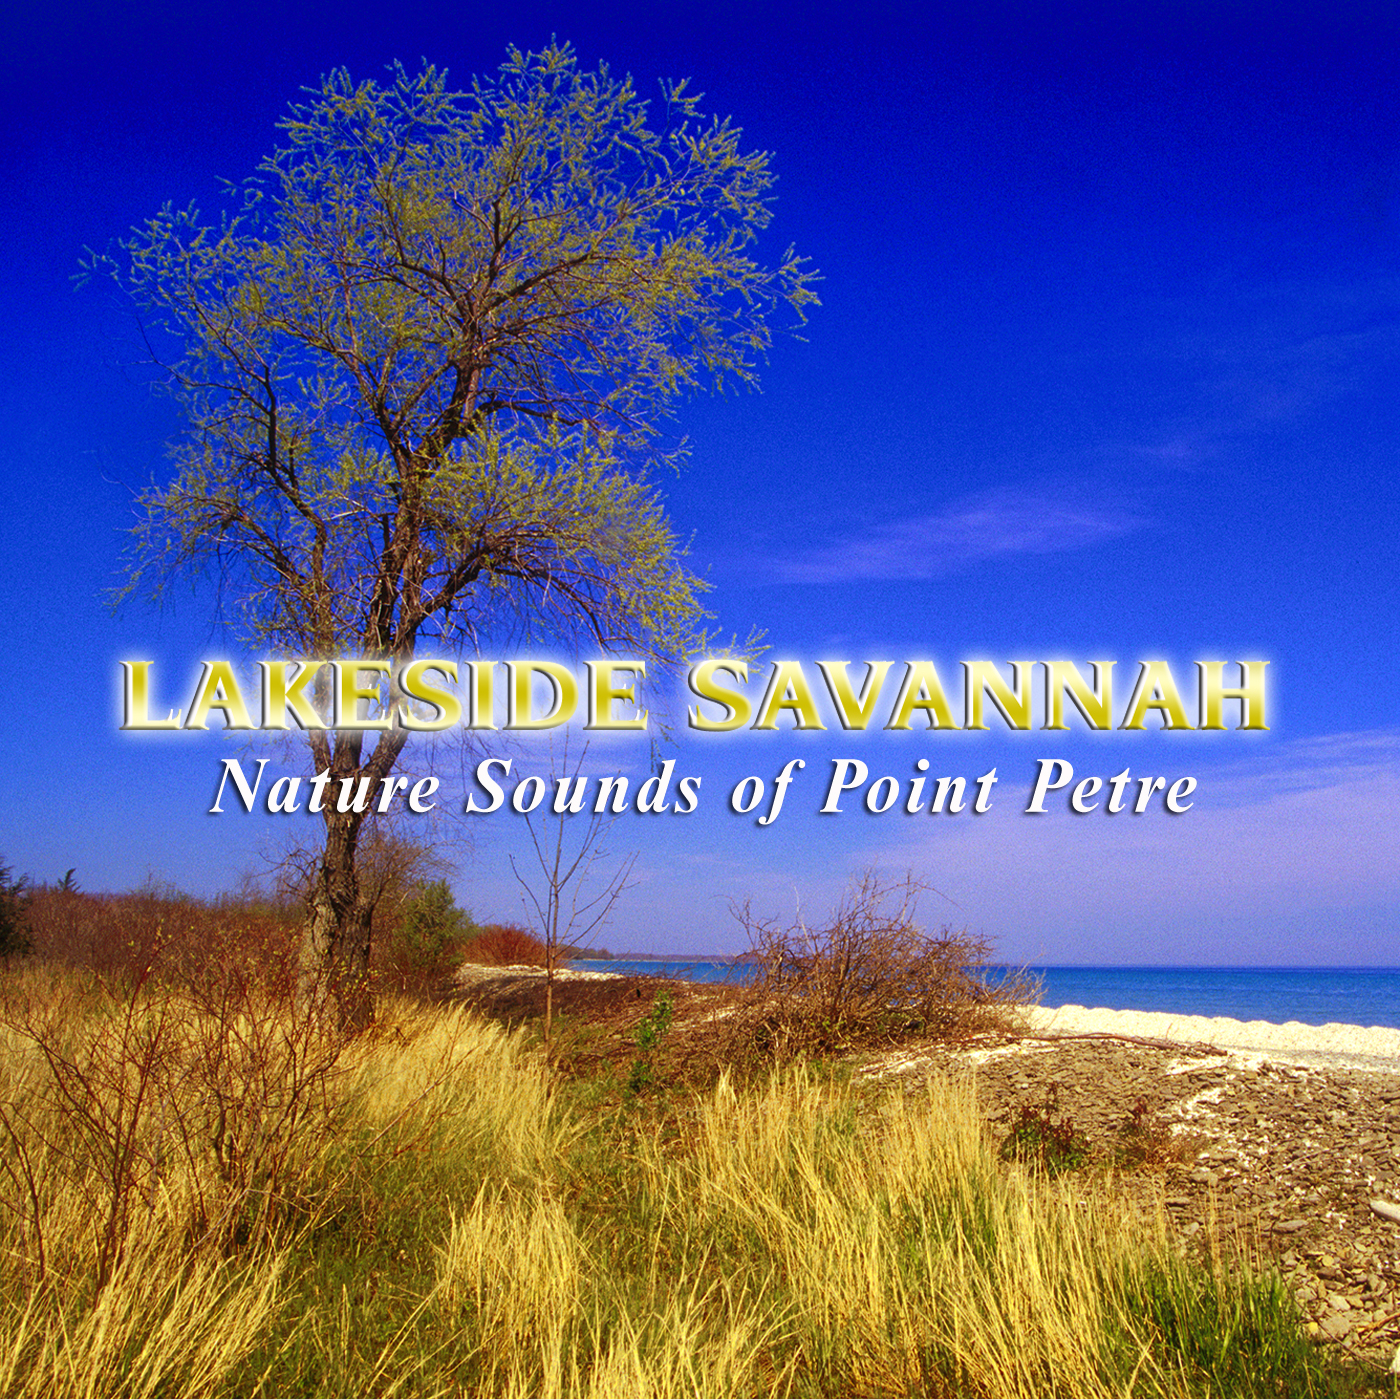 Lakeside Savannah